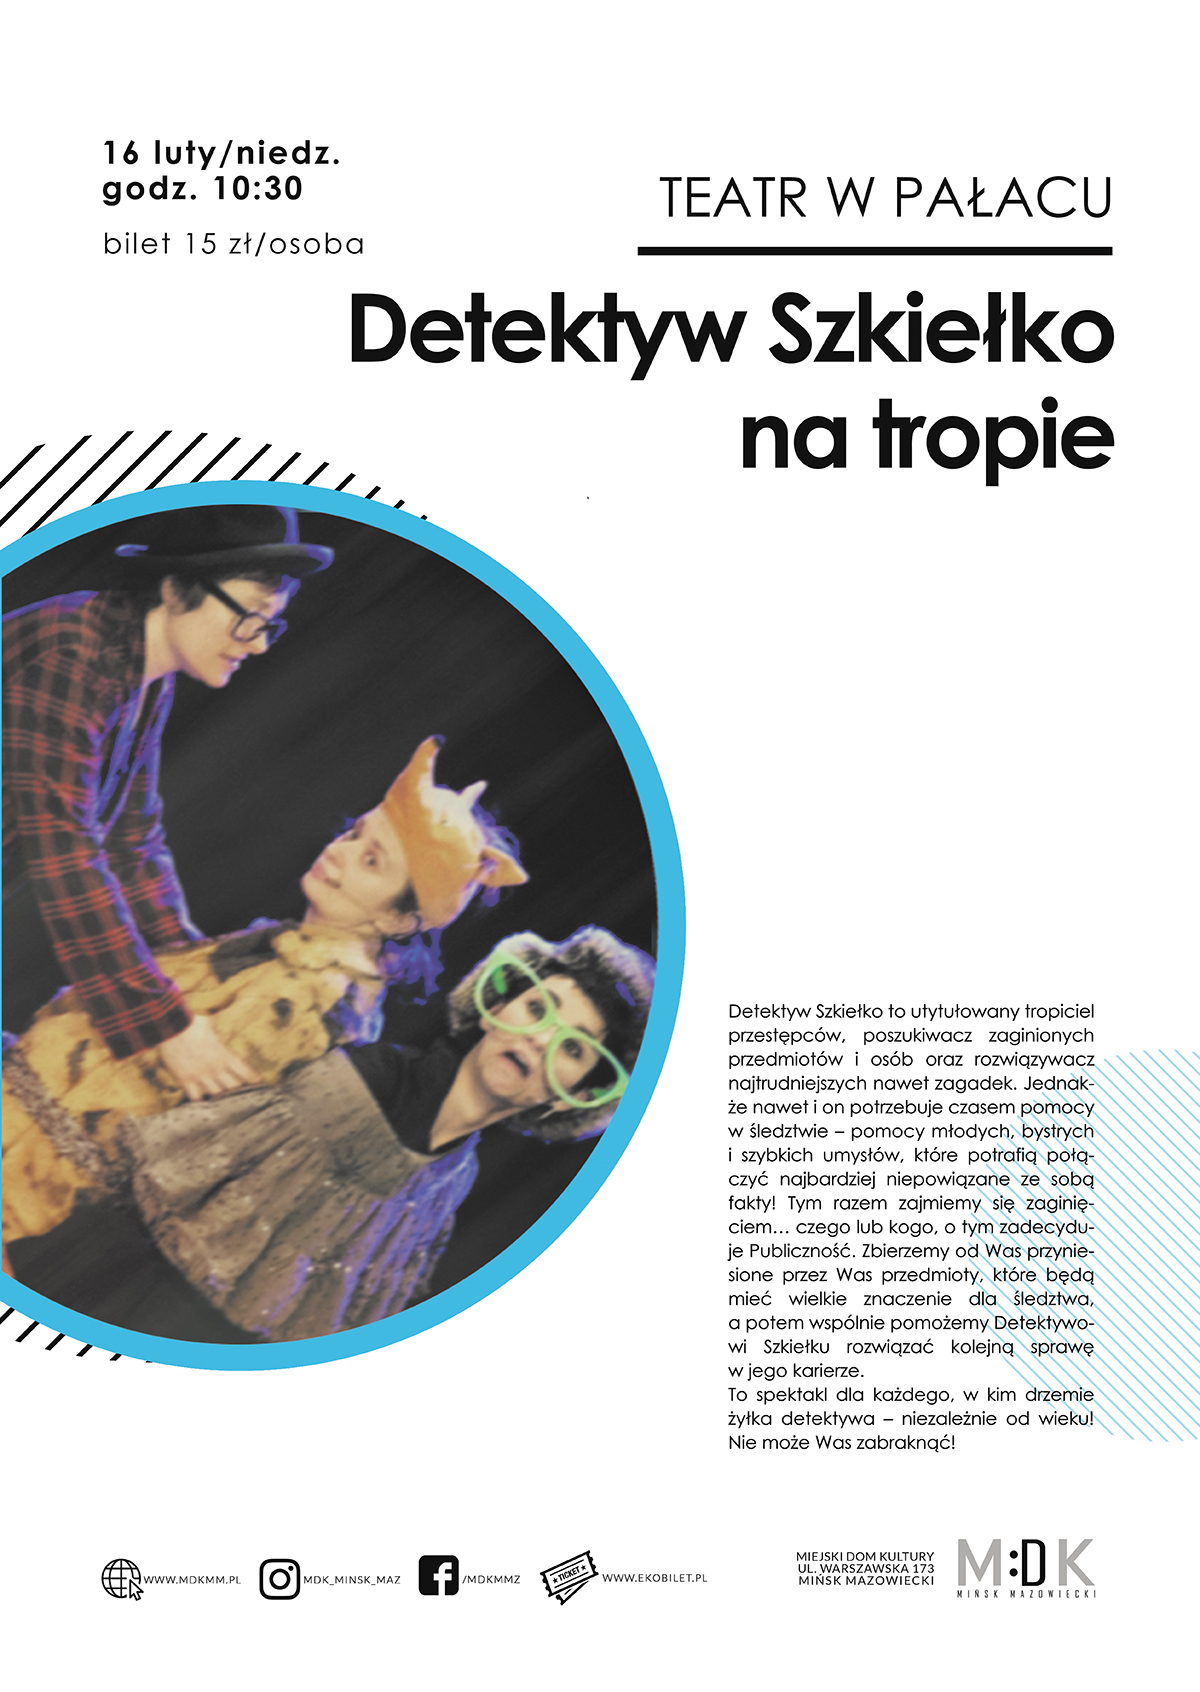 "Detektyw Szkiełko na tropie" - Teatr w Pałacu dla dzieci